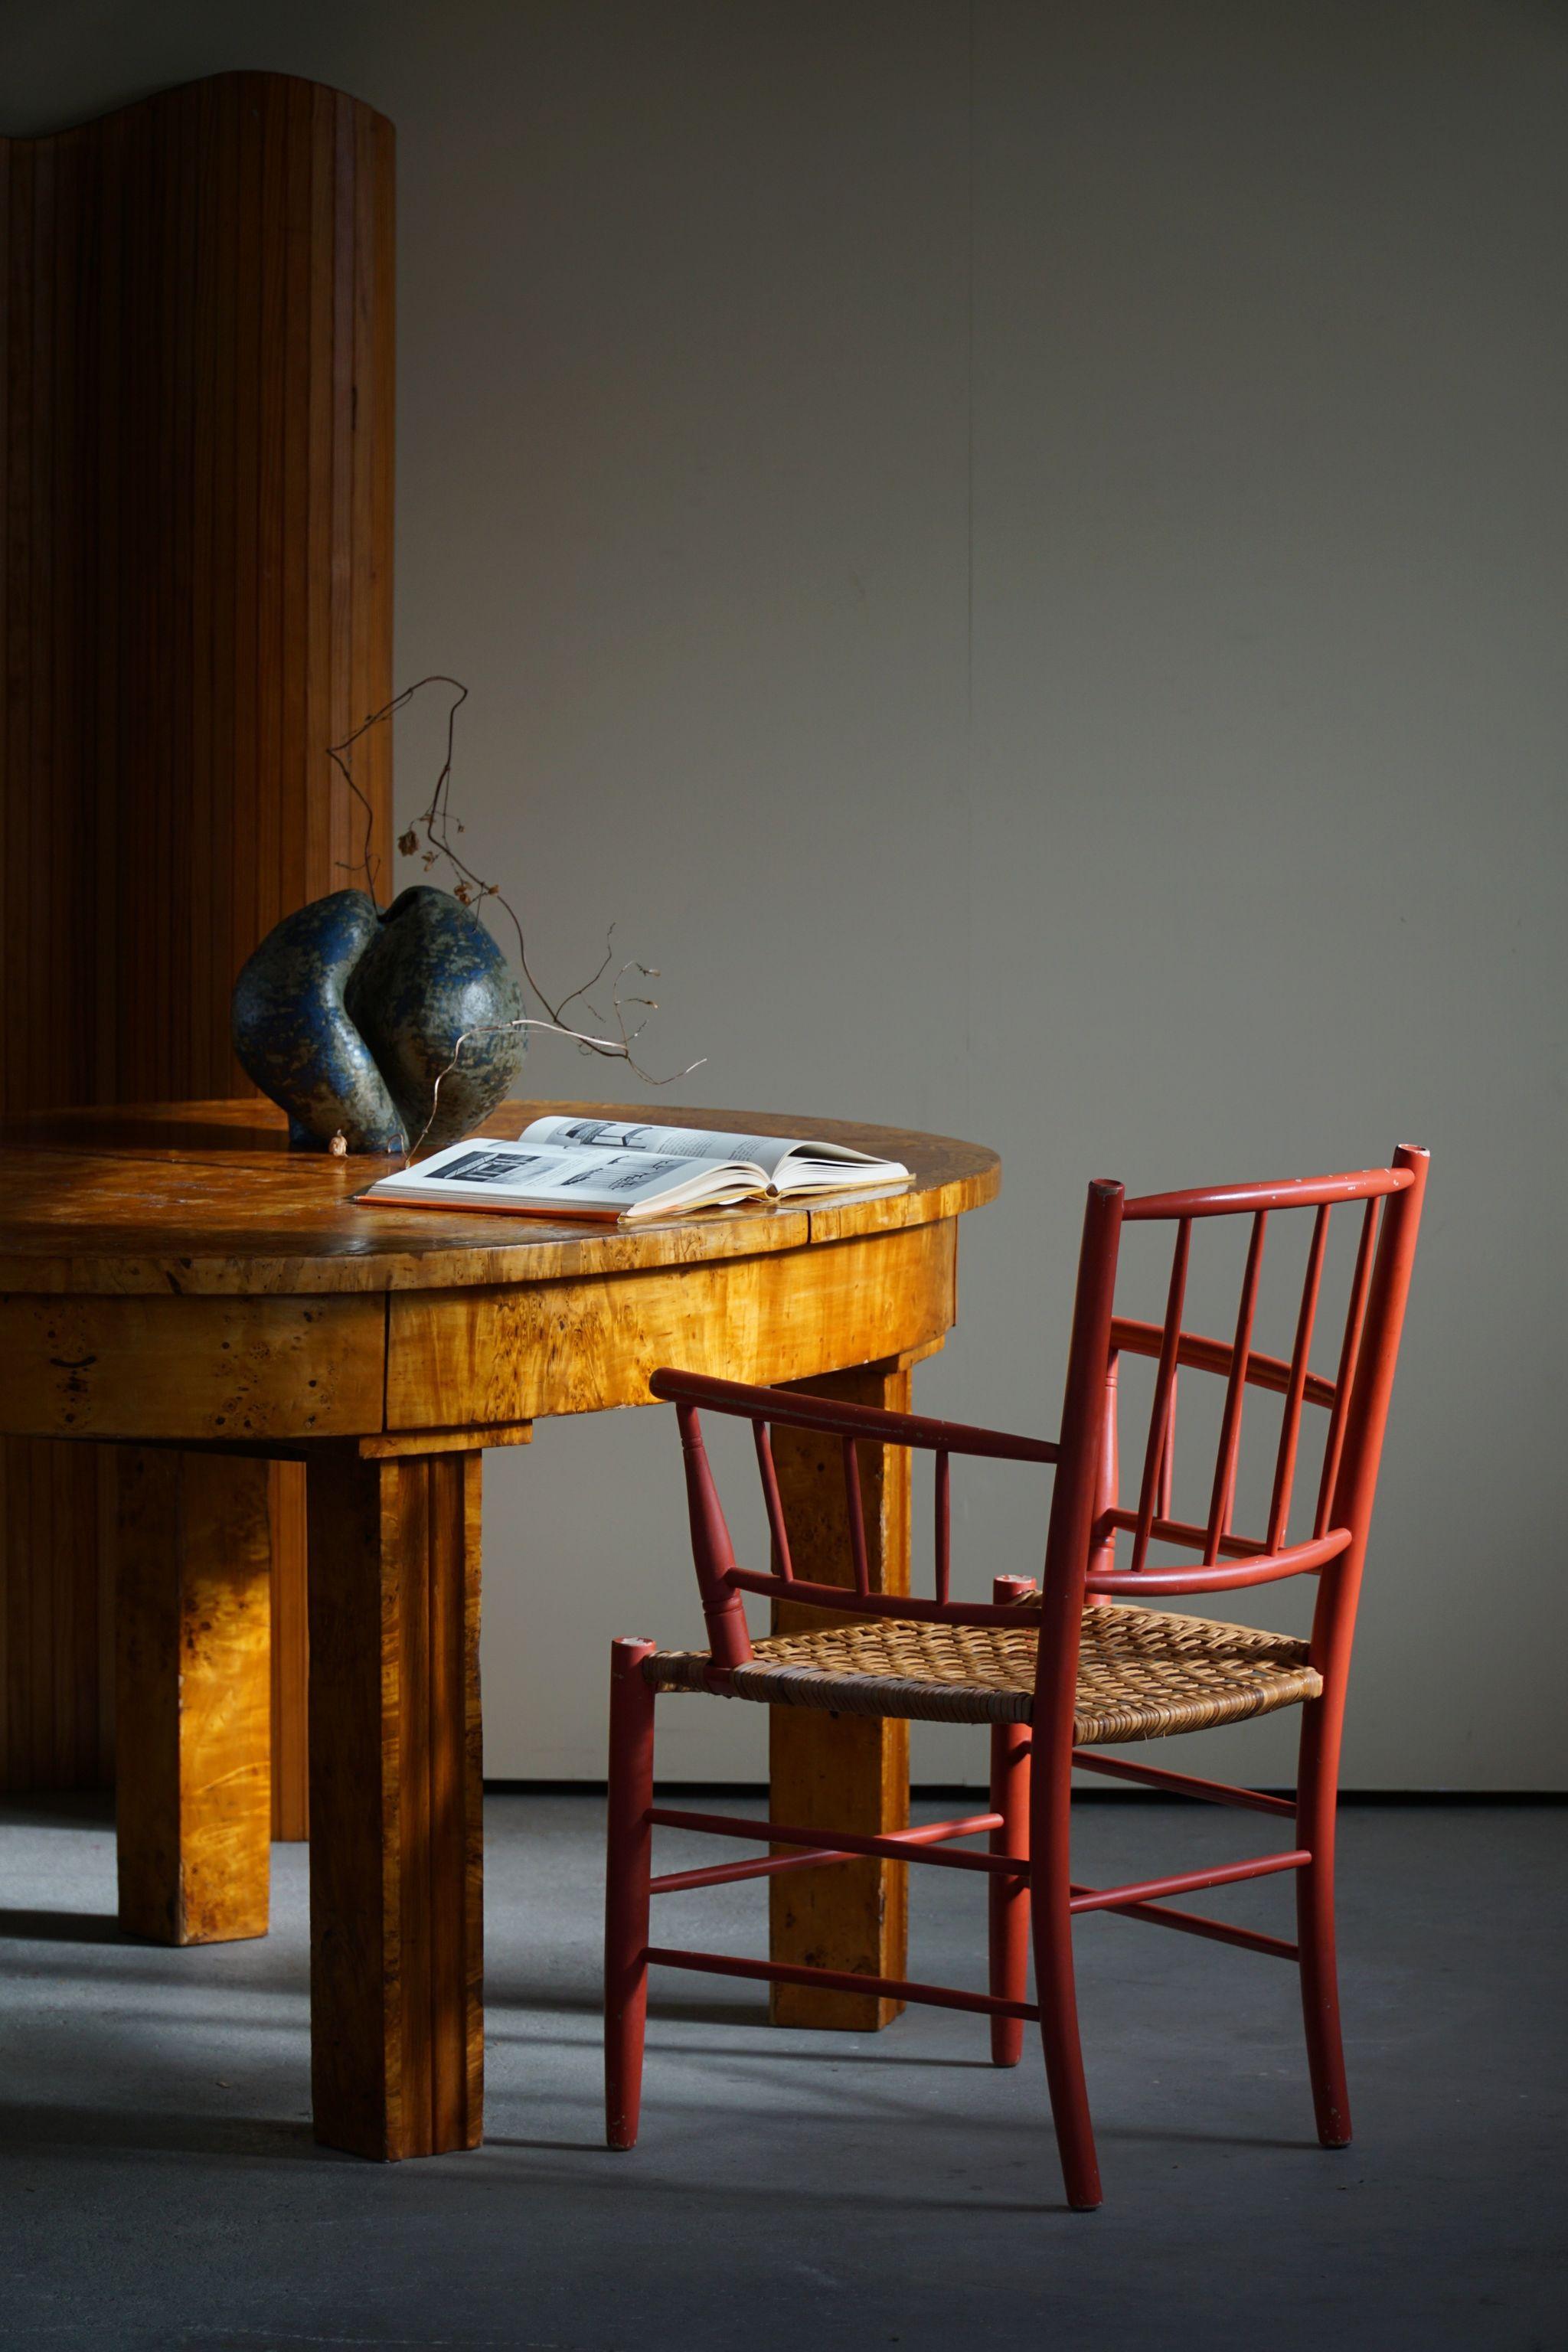 Rare beauté vintage de l'artiste céramiste danois Björn Wiinblad, réalisée pour Nässjö Stolefabrik en Suède. Fauteuil de collection peint en rouge avec siège en rotin dans une magnifique patine. 

Une chaise décorative pour un intérieur moderne.